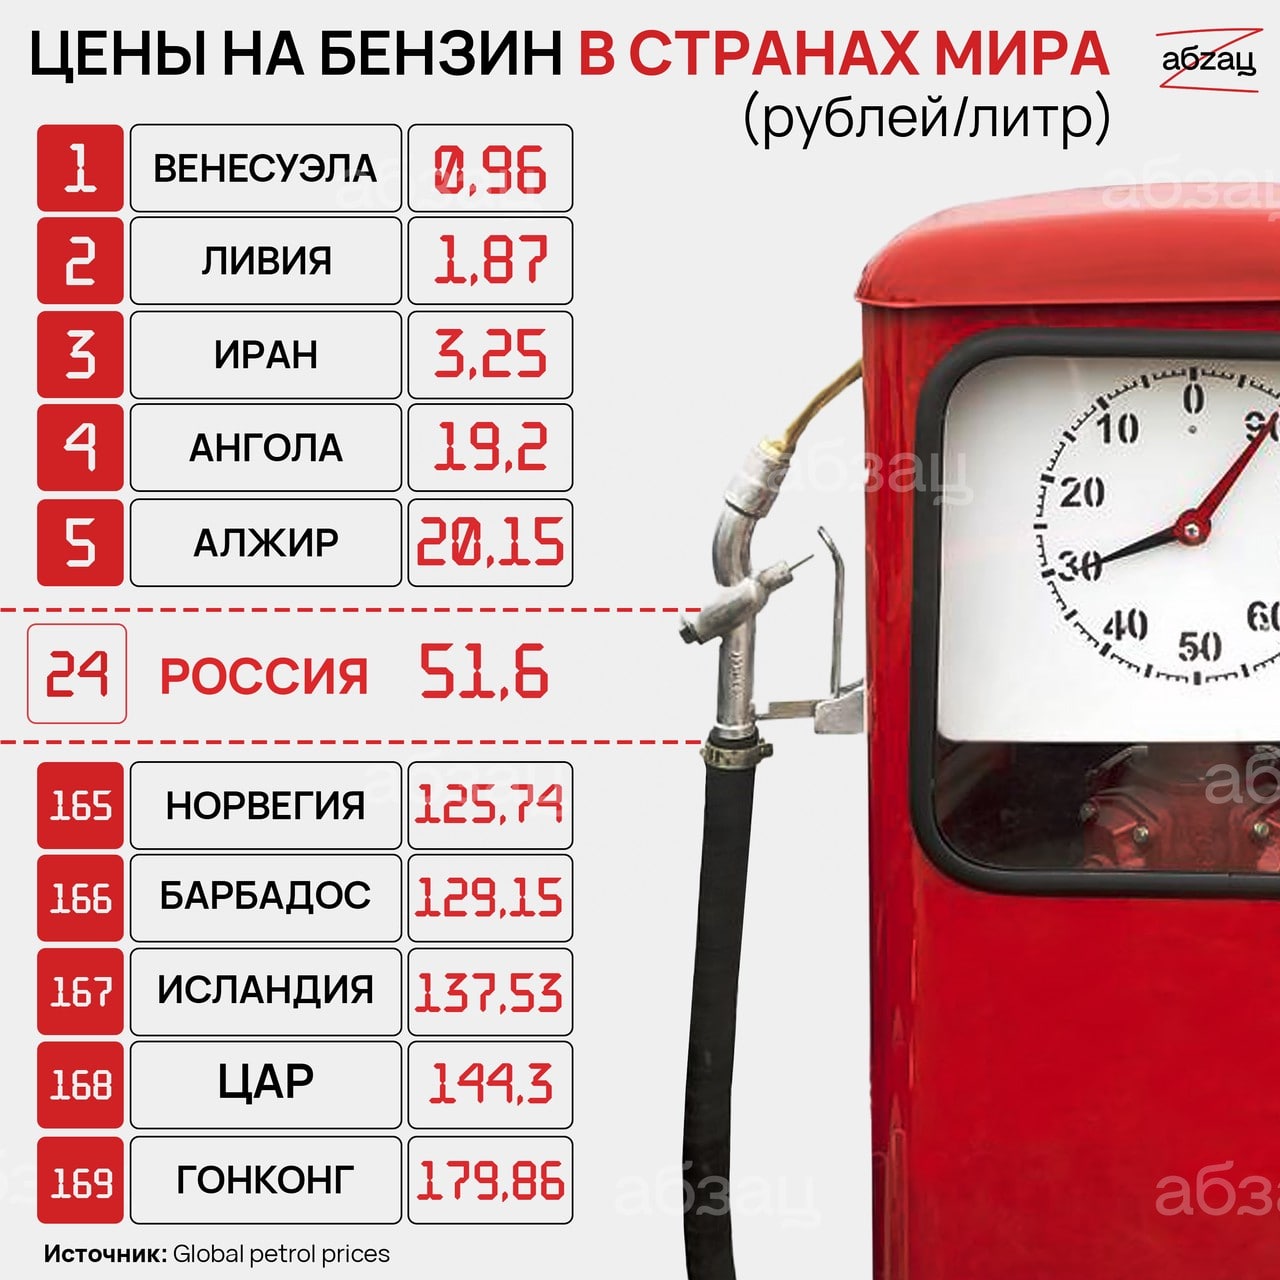 Сколько стоит 6 литров бензина. Цена бензина за 1 литр. Сколько стоит 1 литр бензина. Бензин 40 рублей за литр. Бензин в Казахстане и России.